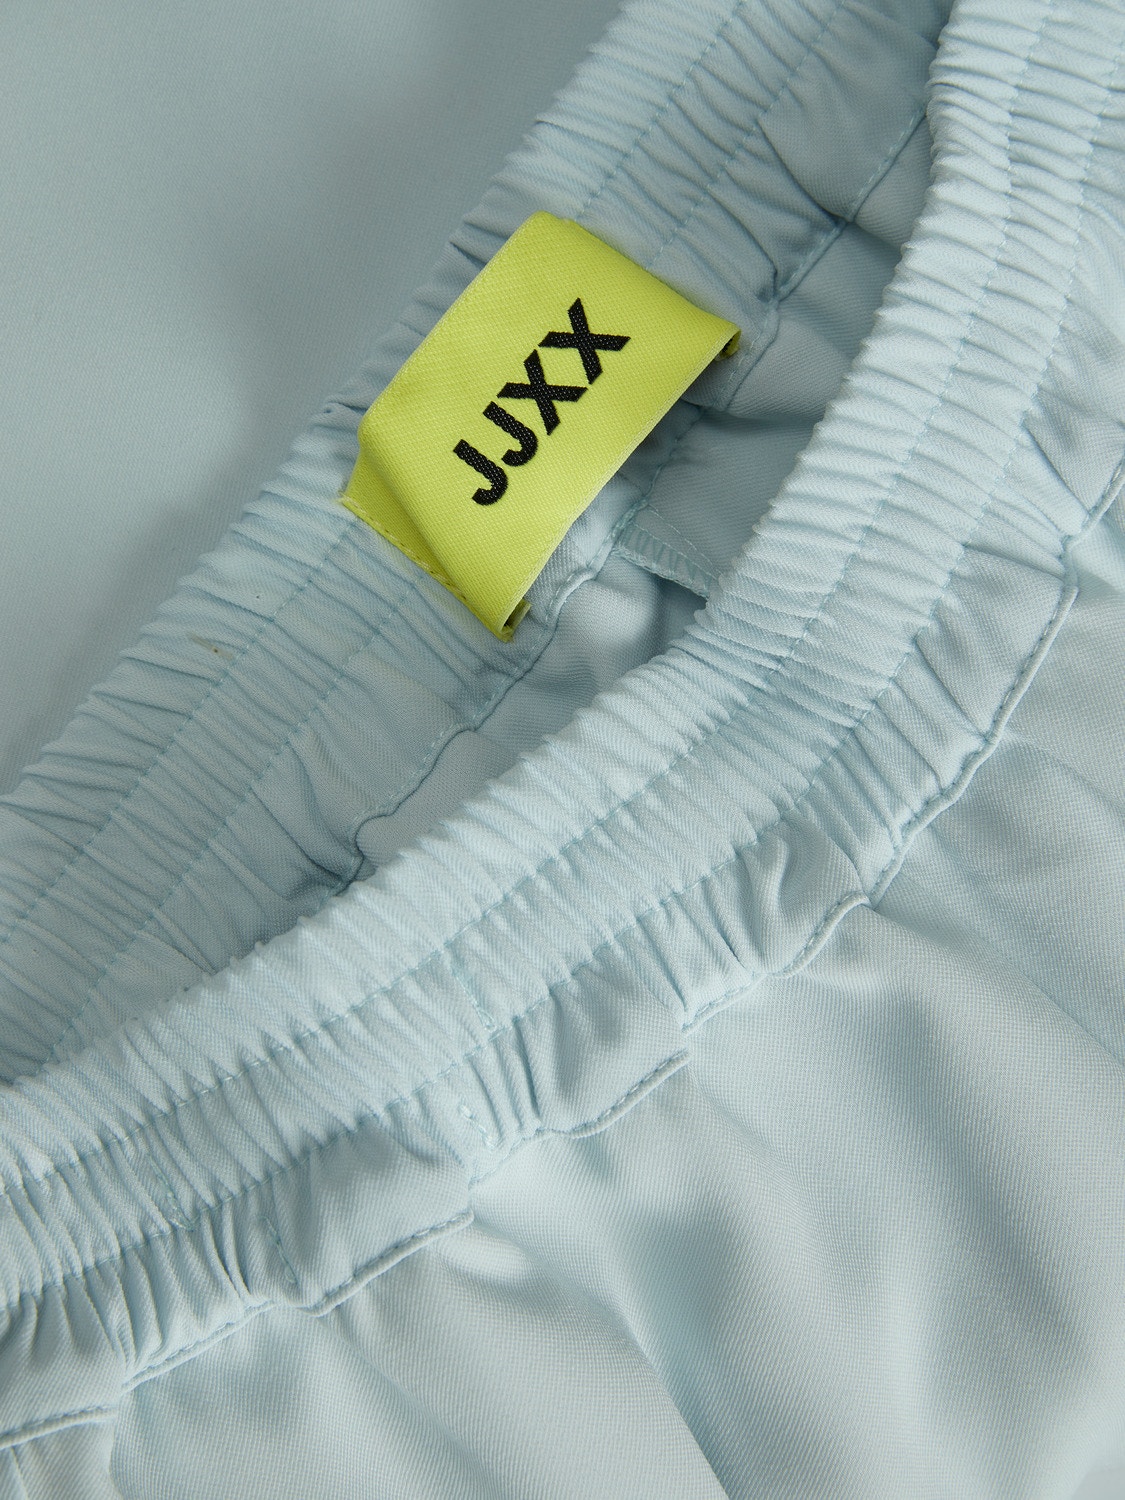 JJXX JXPOPPY Classic trousers -Baby Blue - 12200751